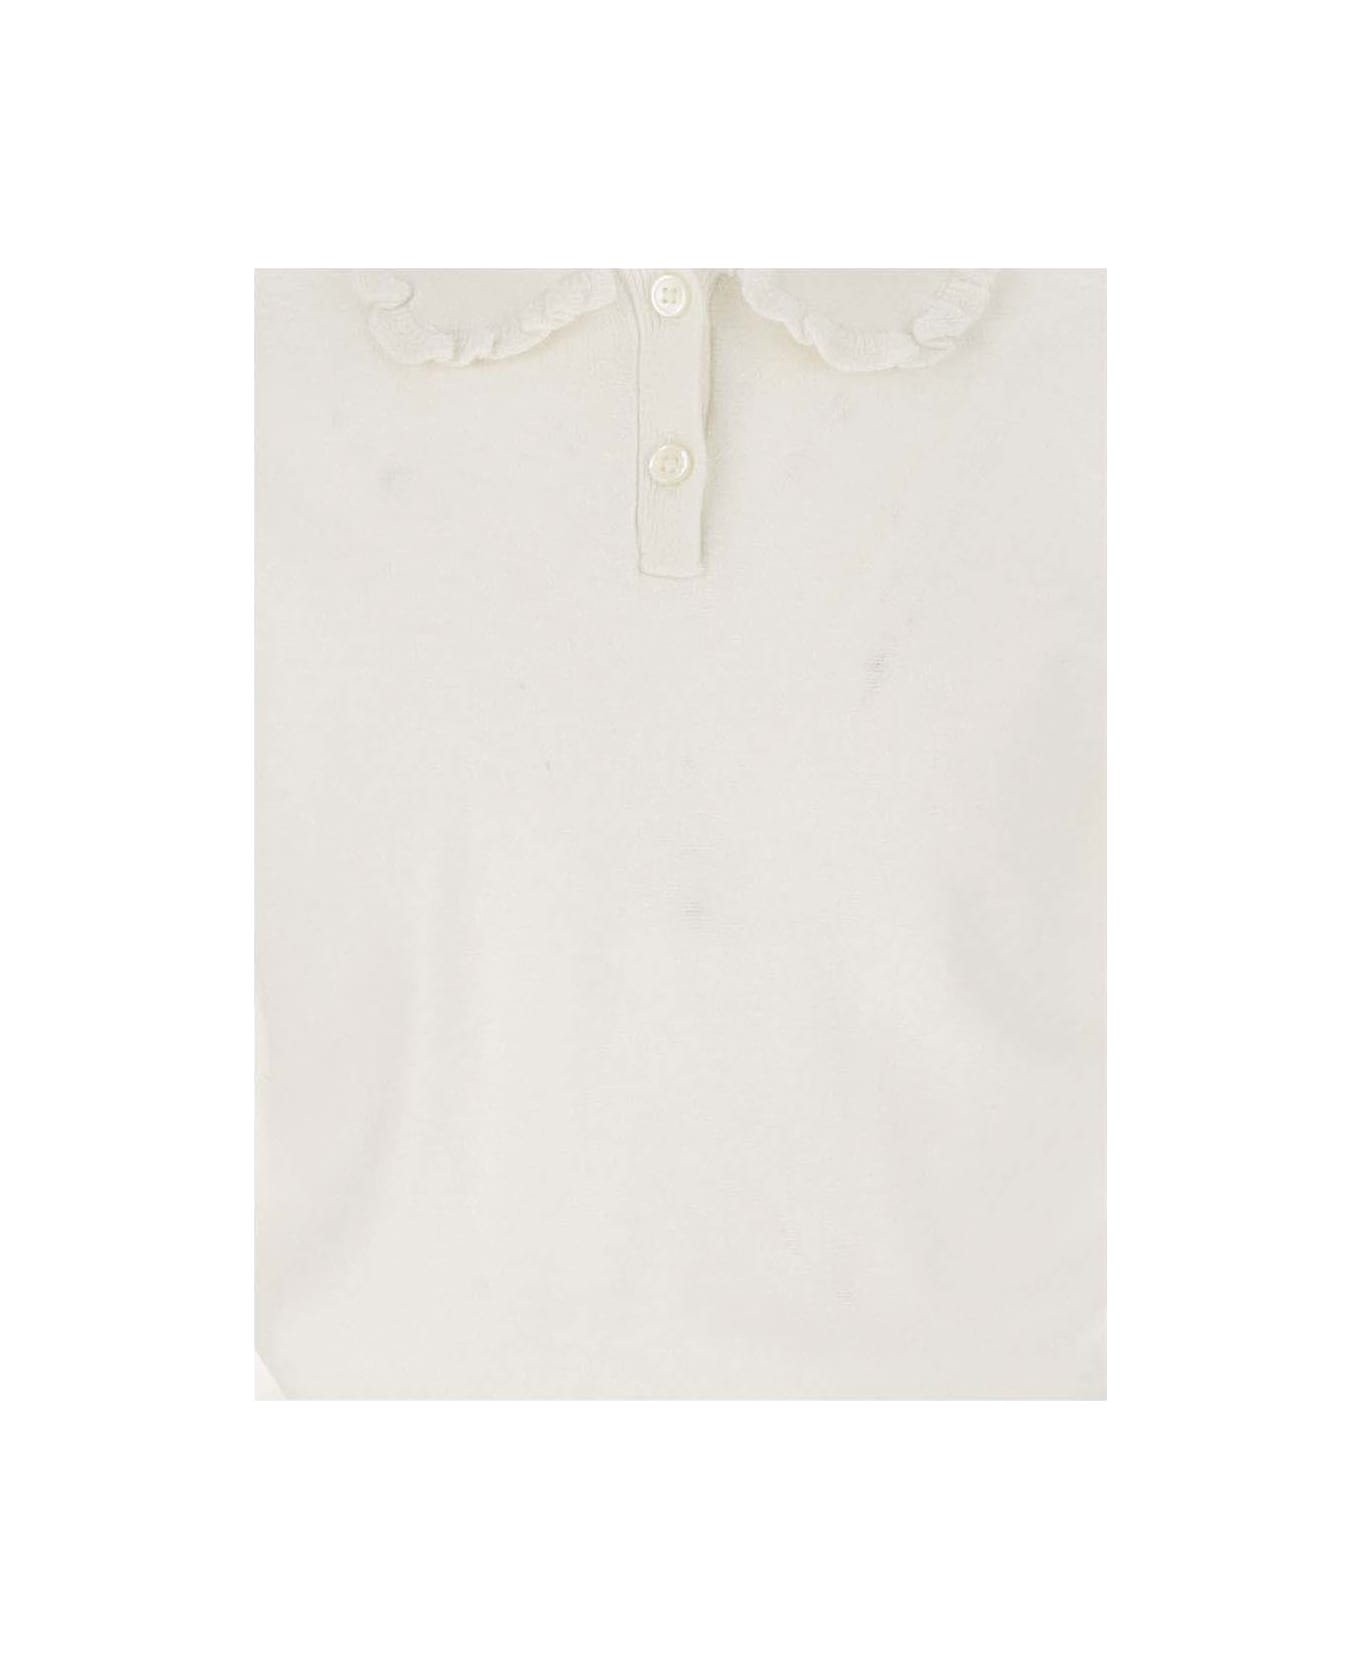 Bonpoint Cotton And Linen Polo Shirt - White